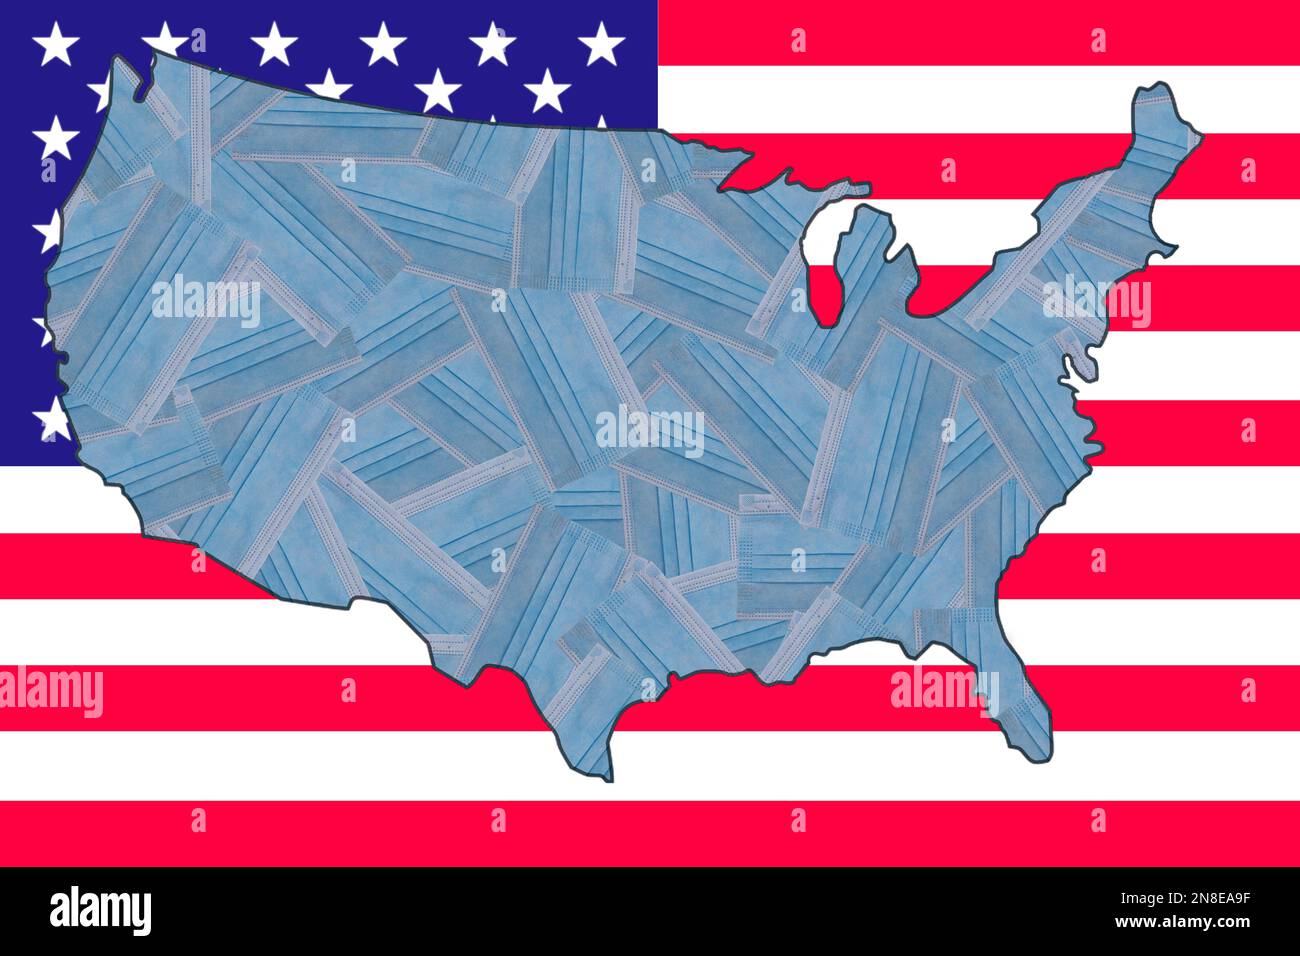 Masques médicaux bleus placés au hasard sous la forme d'une carte géographique des États-Unis sur le fond du drapeau national de l'Amérique. Pandémie. Zéro Covid Banque D'Images